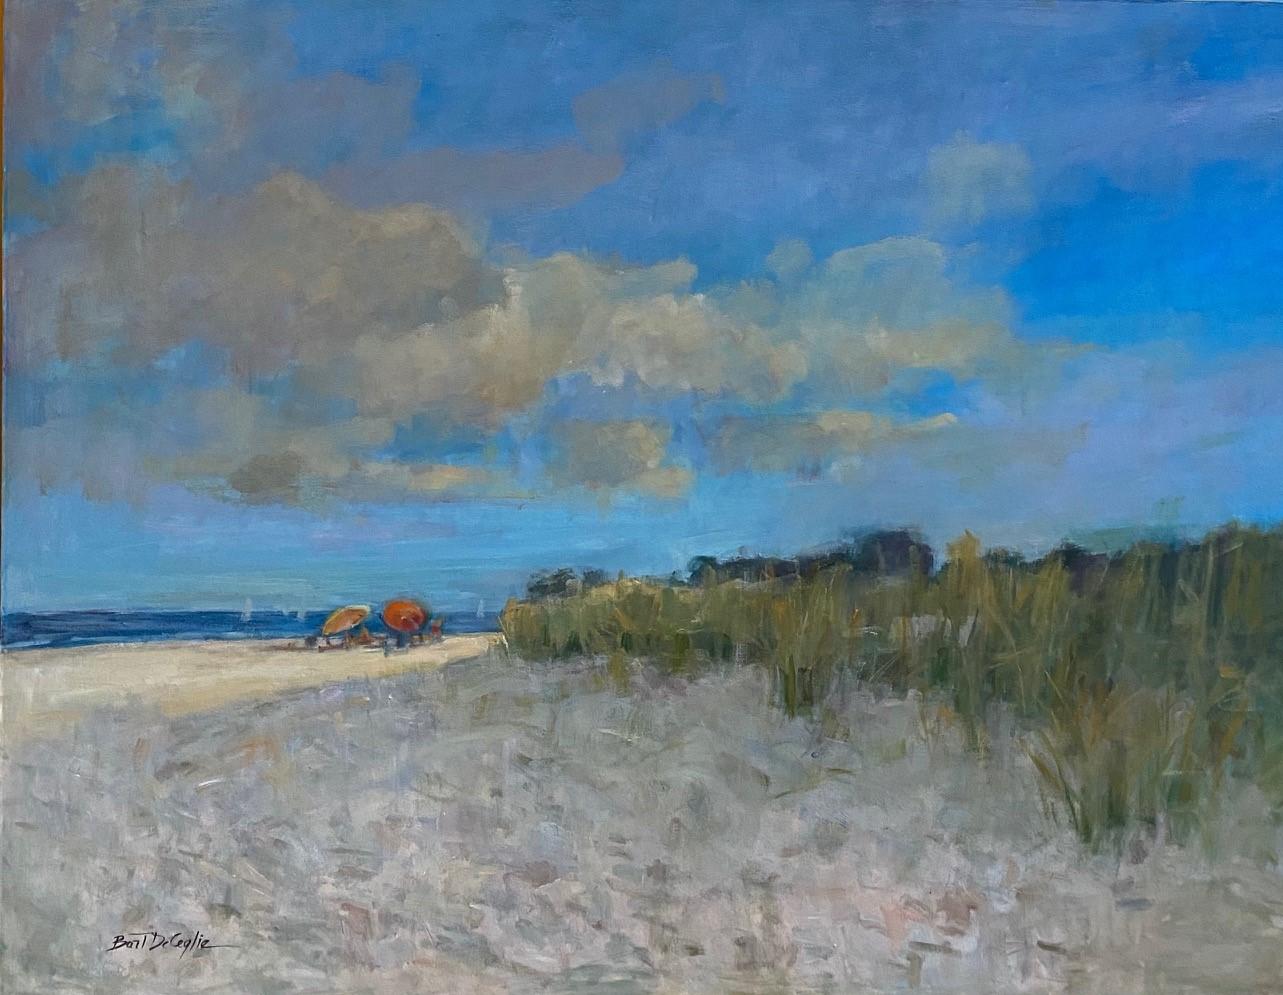 Bart DeCeglie Landscape Painting - Beach in Midsummer, original 36x48iimpressionist marine landscape